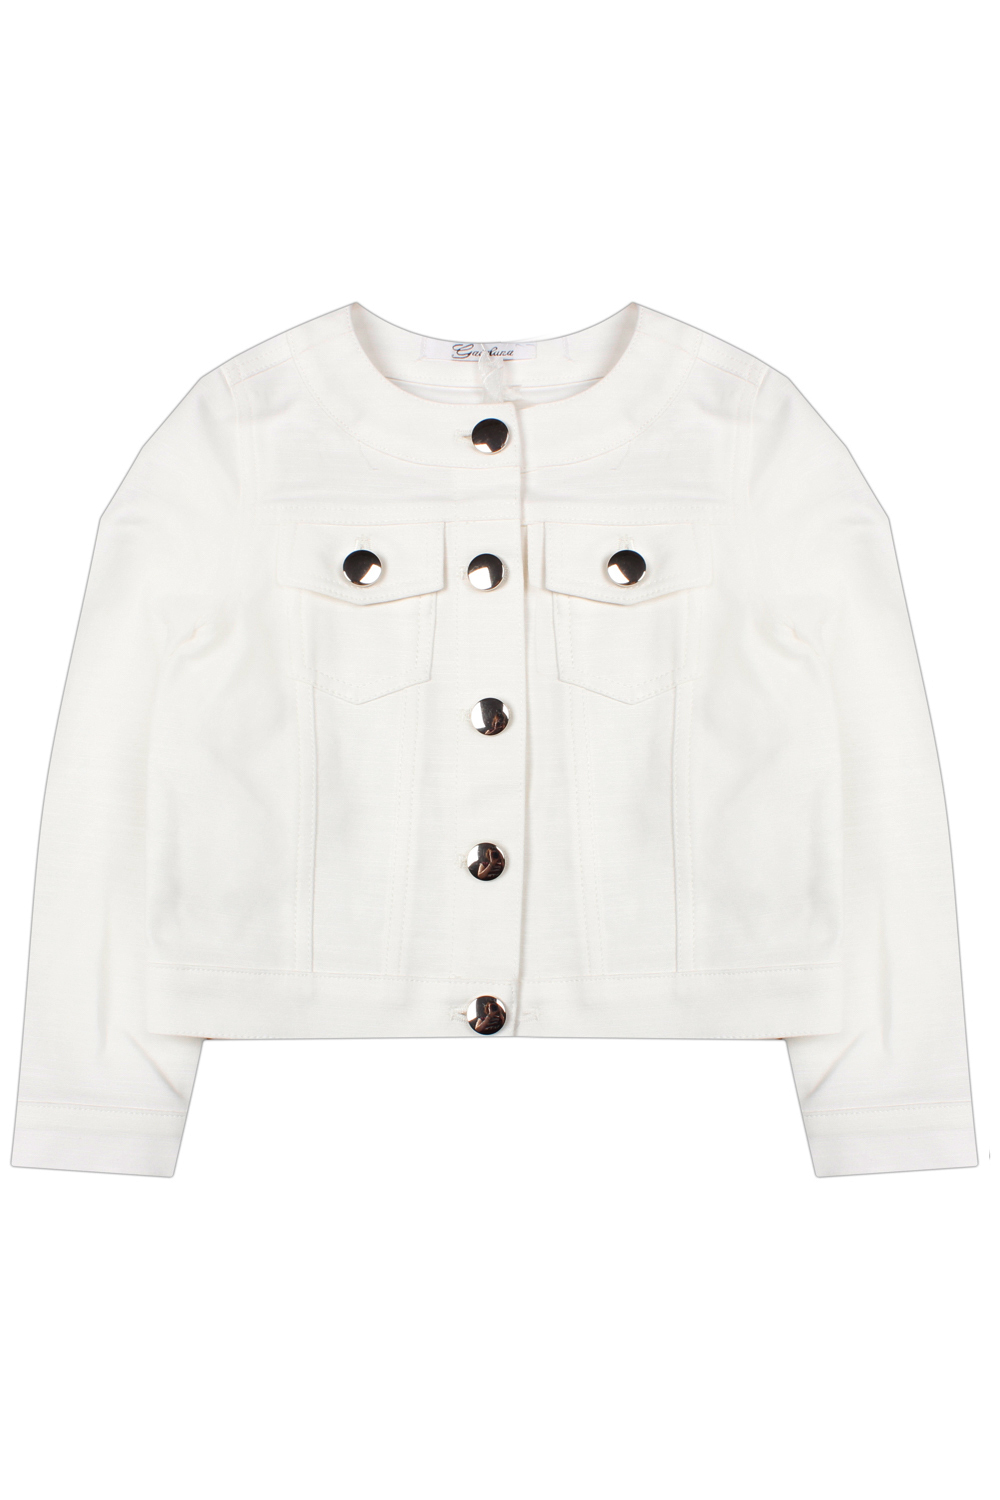 Куртка Gaialuna, размер 106, цвет белый G379 - фото 1